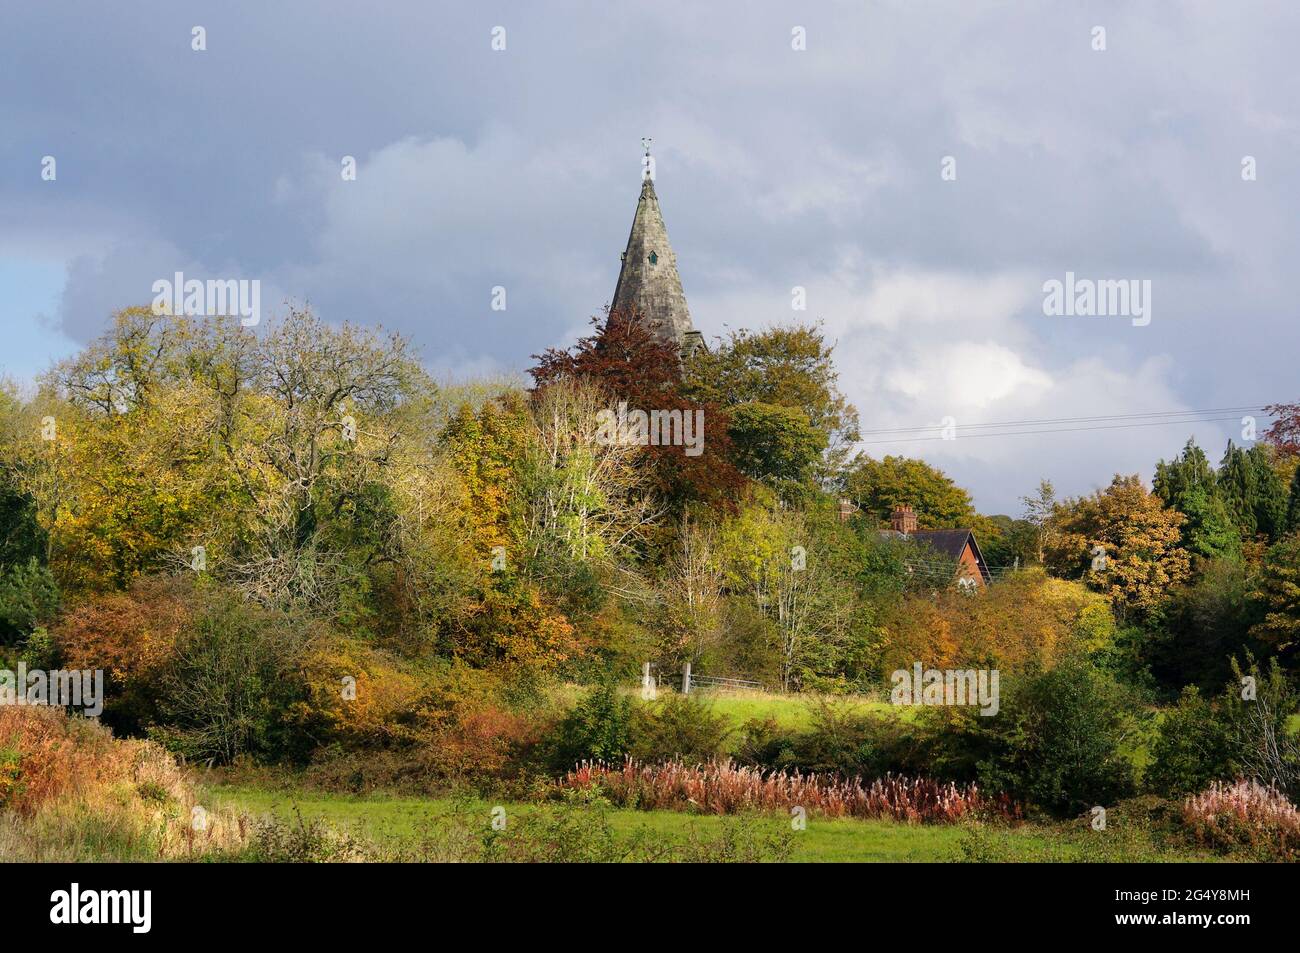 Chiesa di San Ciad a Longsdon, Staffordshire. Guglia della Chiesa che domina gli alberi e i campi d'autunno in un idillio rurale. Foto Stock